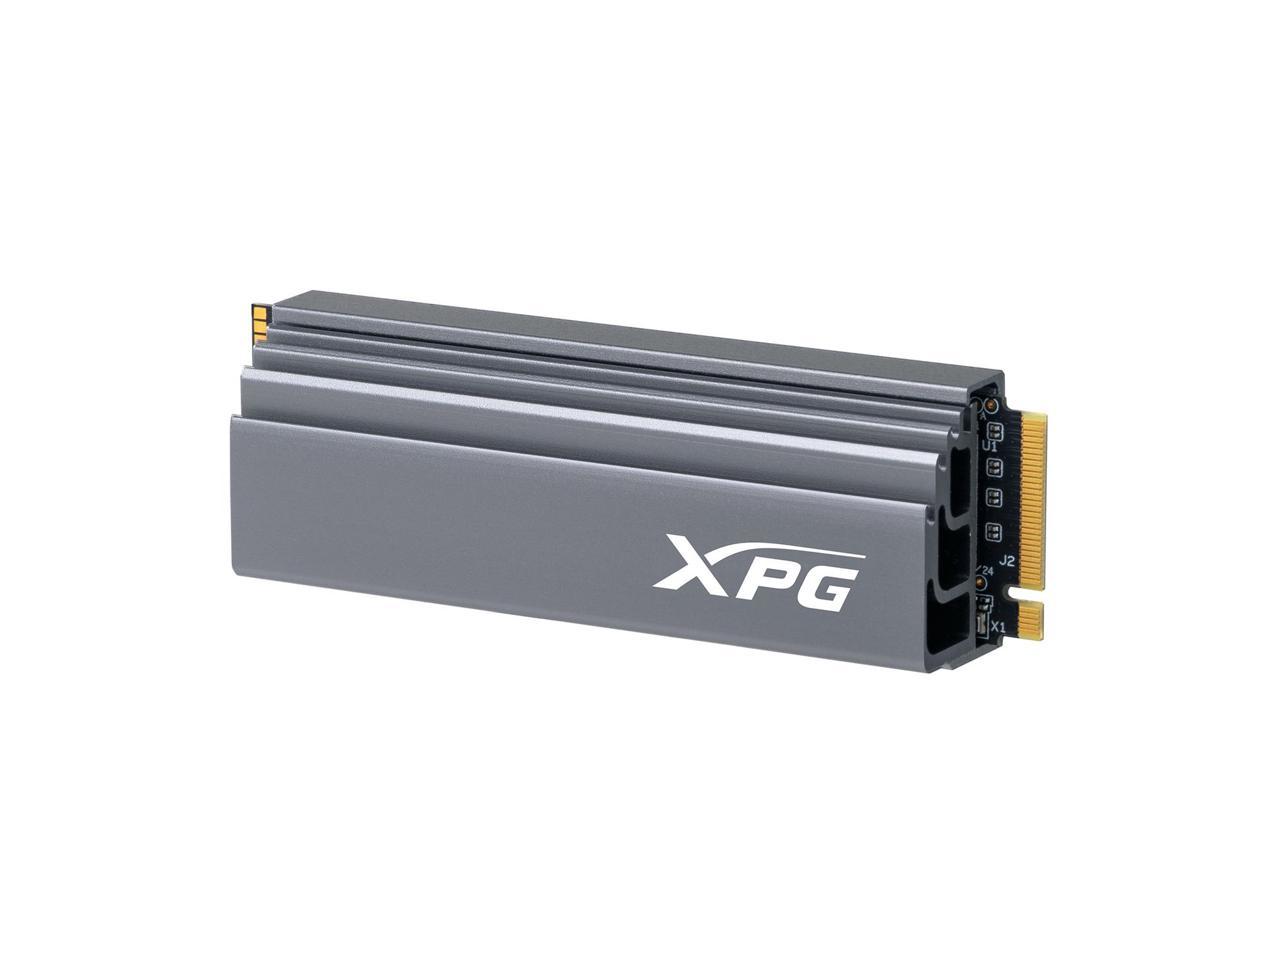 ADATA XPG GAMMIX S70 PCIe GEN4x4 M.2 2280 2TB SSD - AGAMMIXS70-2T-C